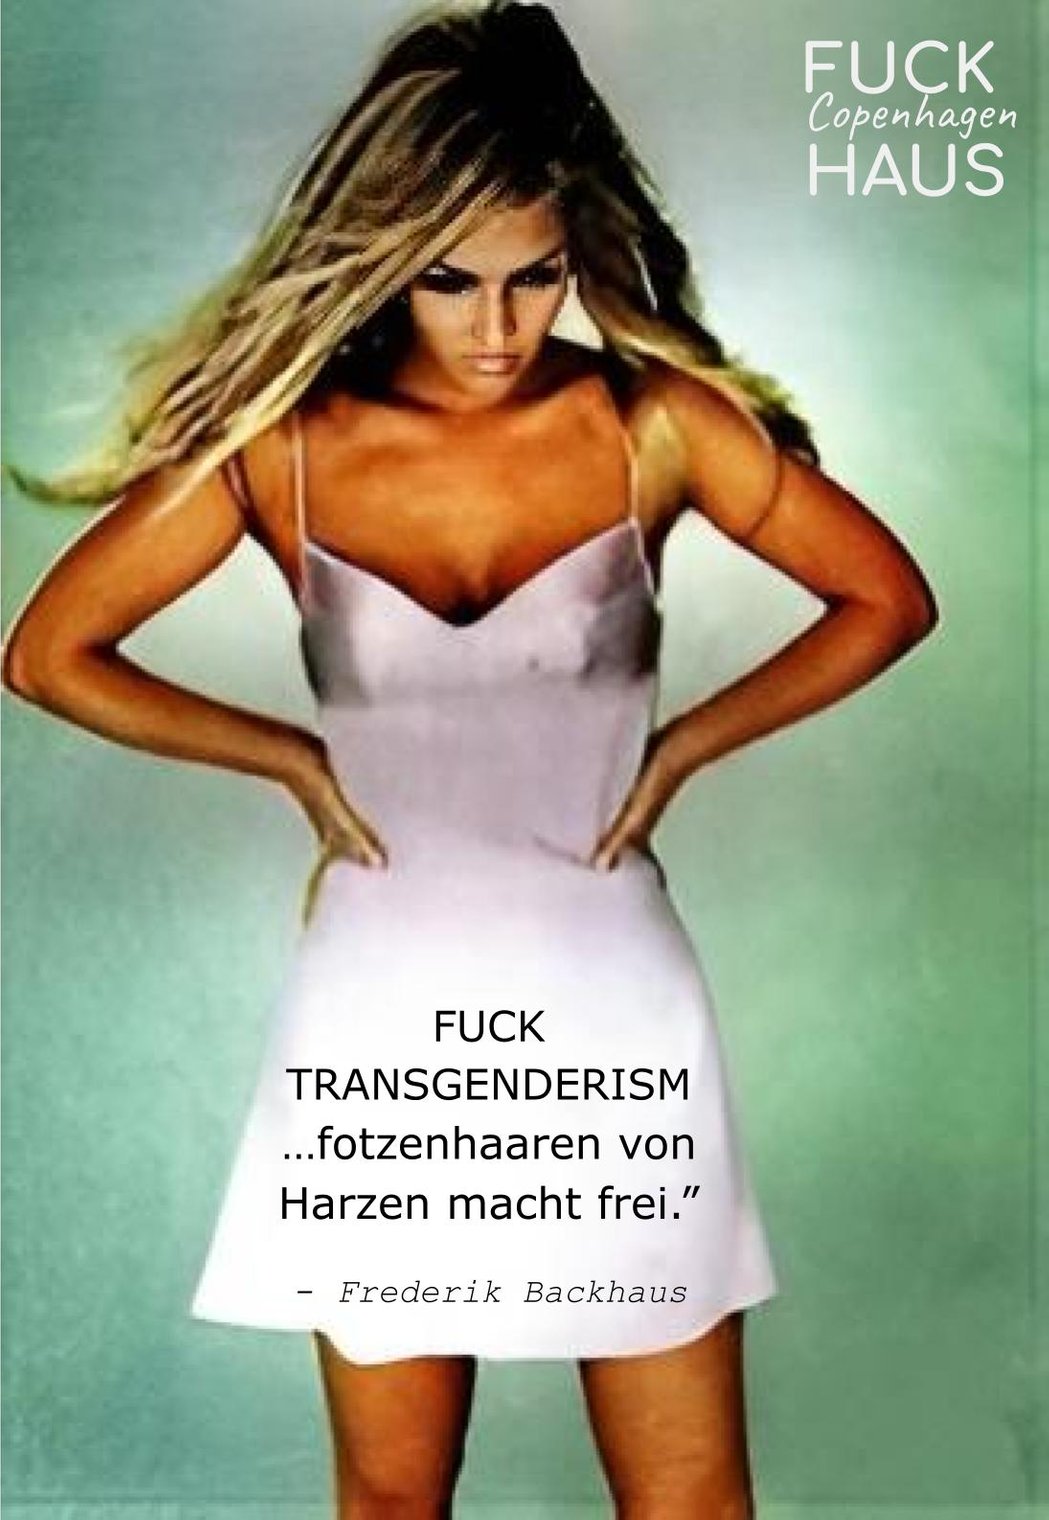 Fuck transgenderism